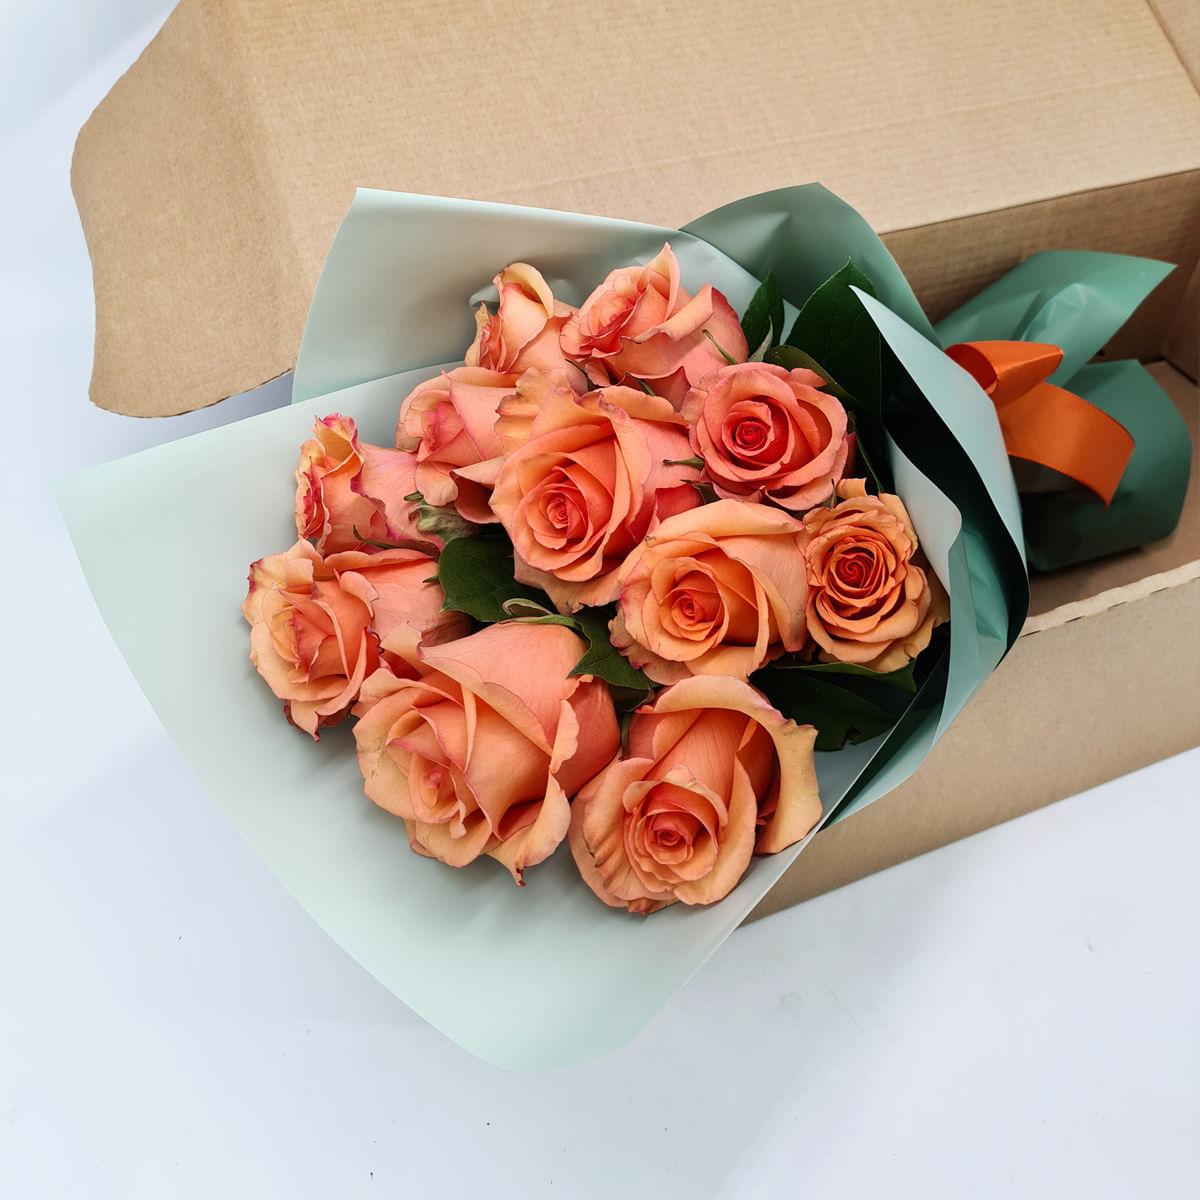 Buchet de 11 trandafiri portocalii in cutie Buchet